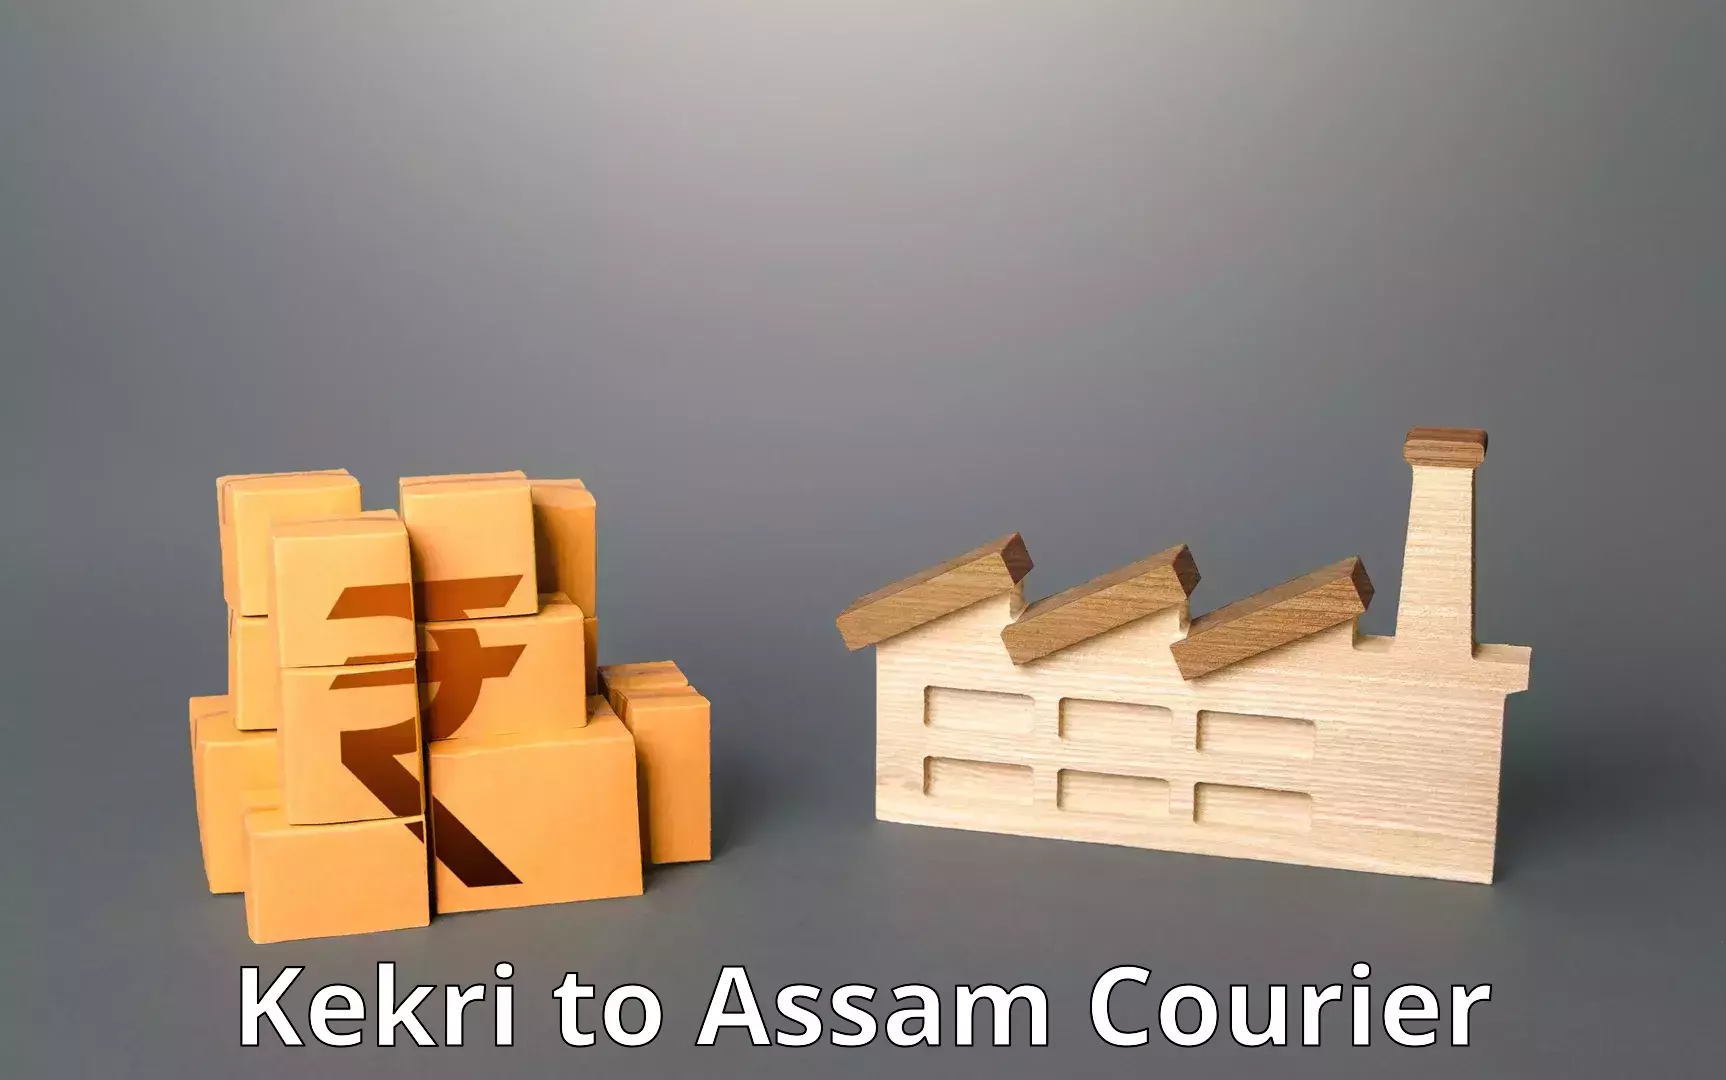 Express logistics providers Kekri to Assam